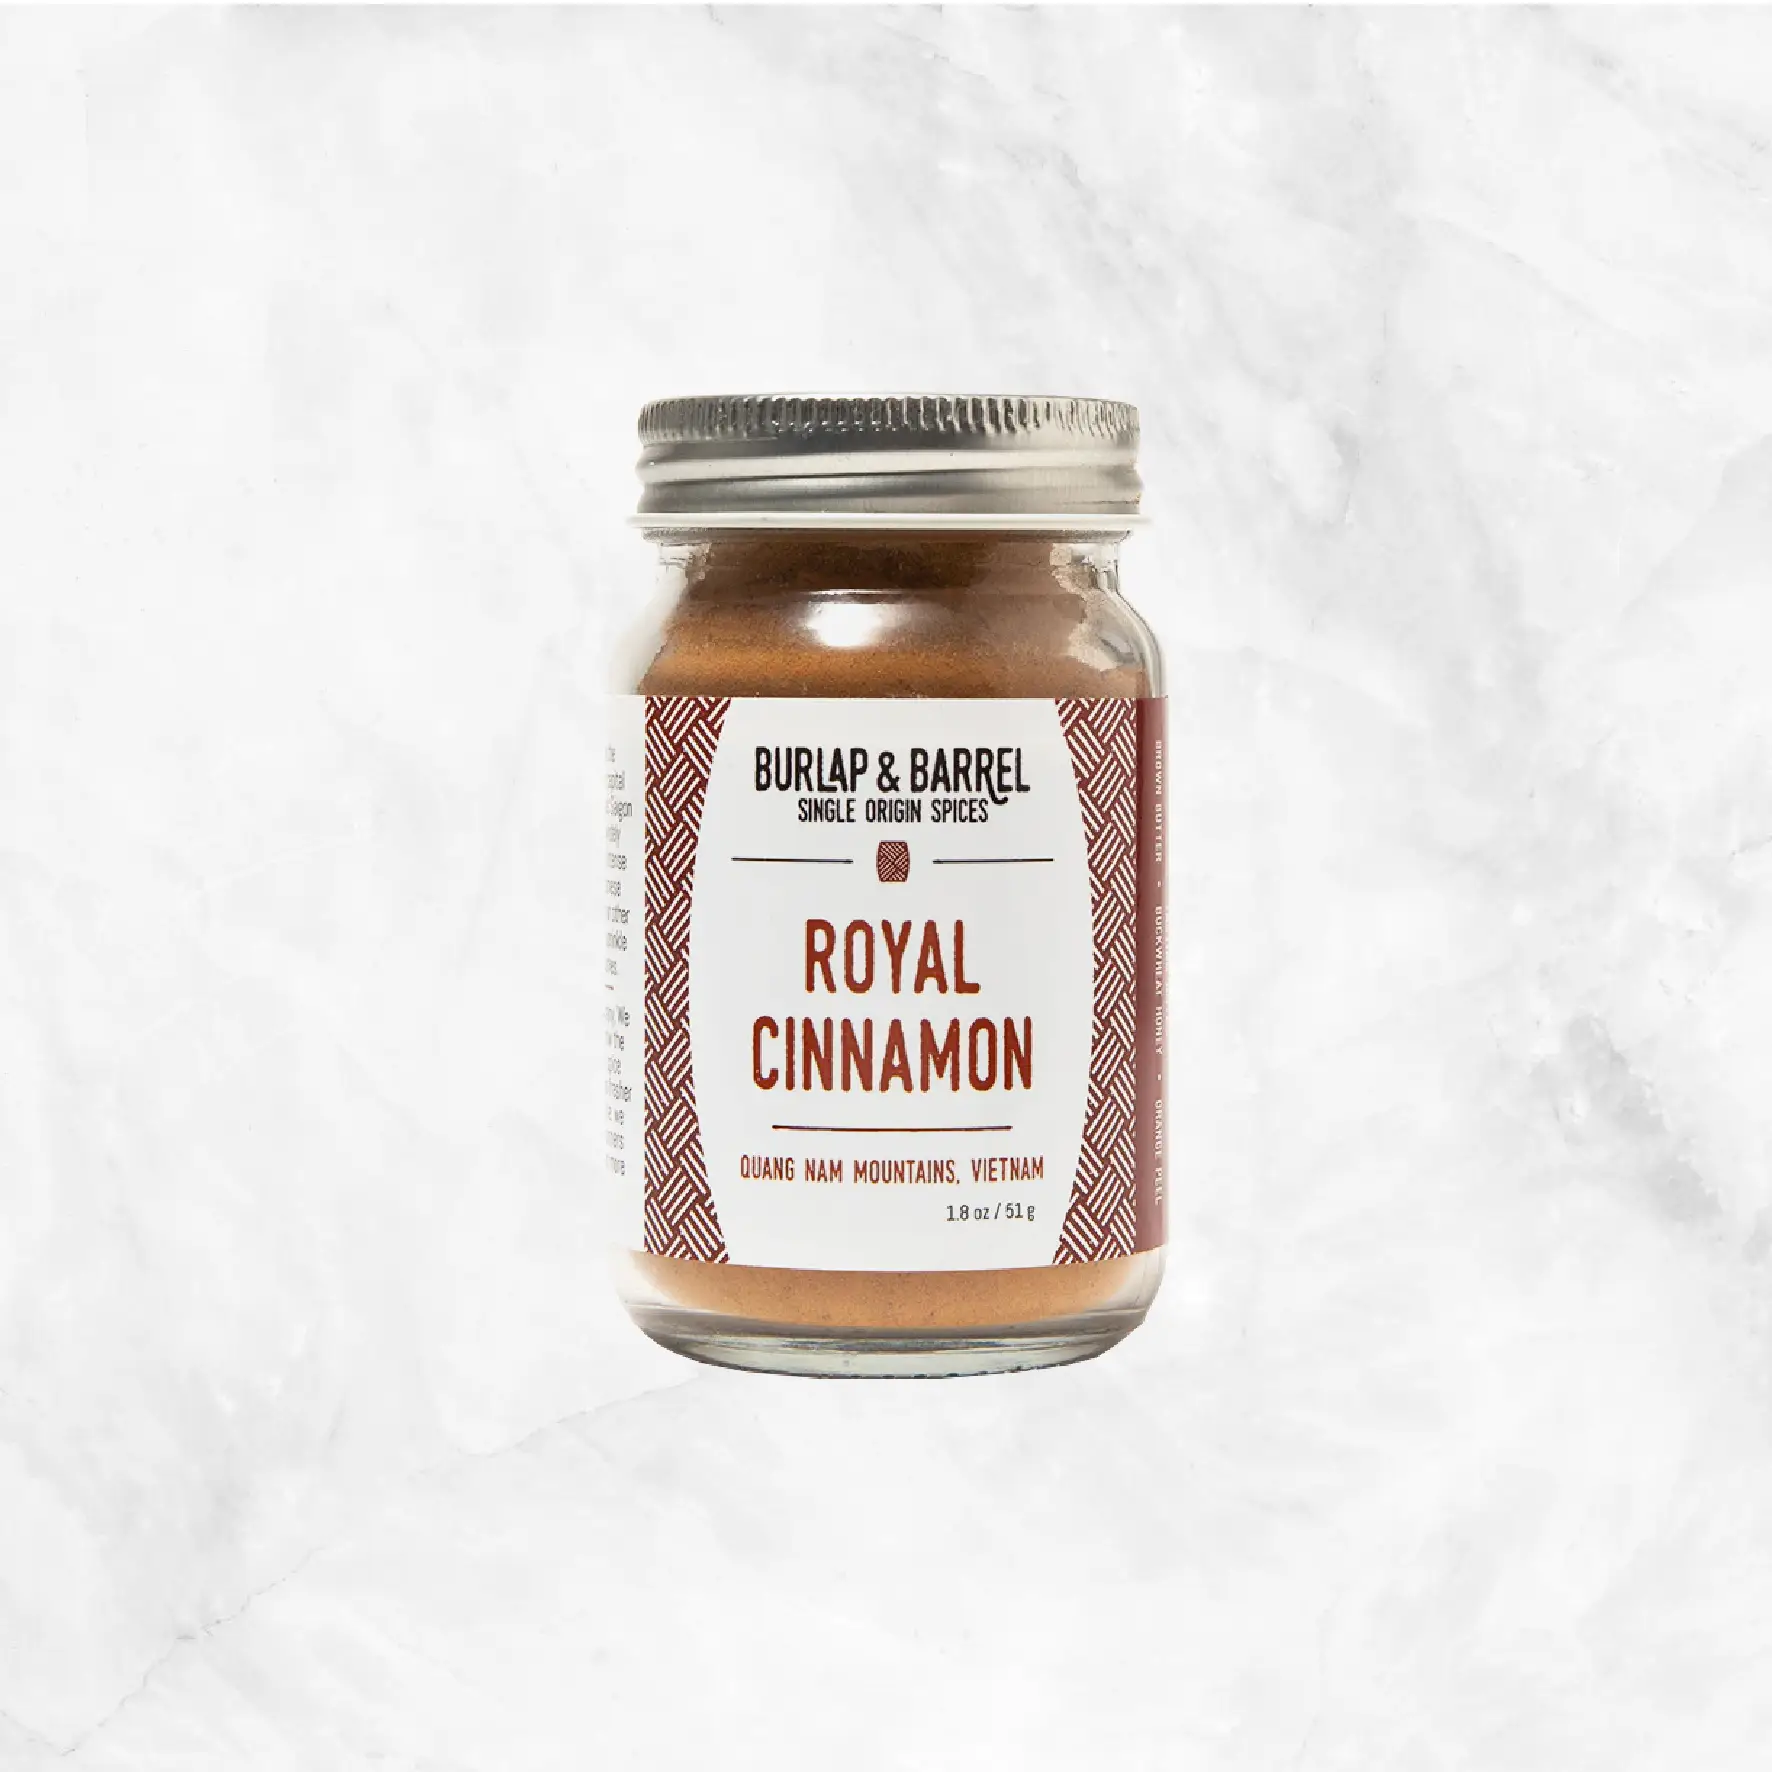 Royal Cinnamon